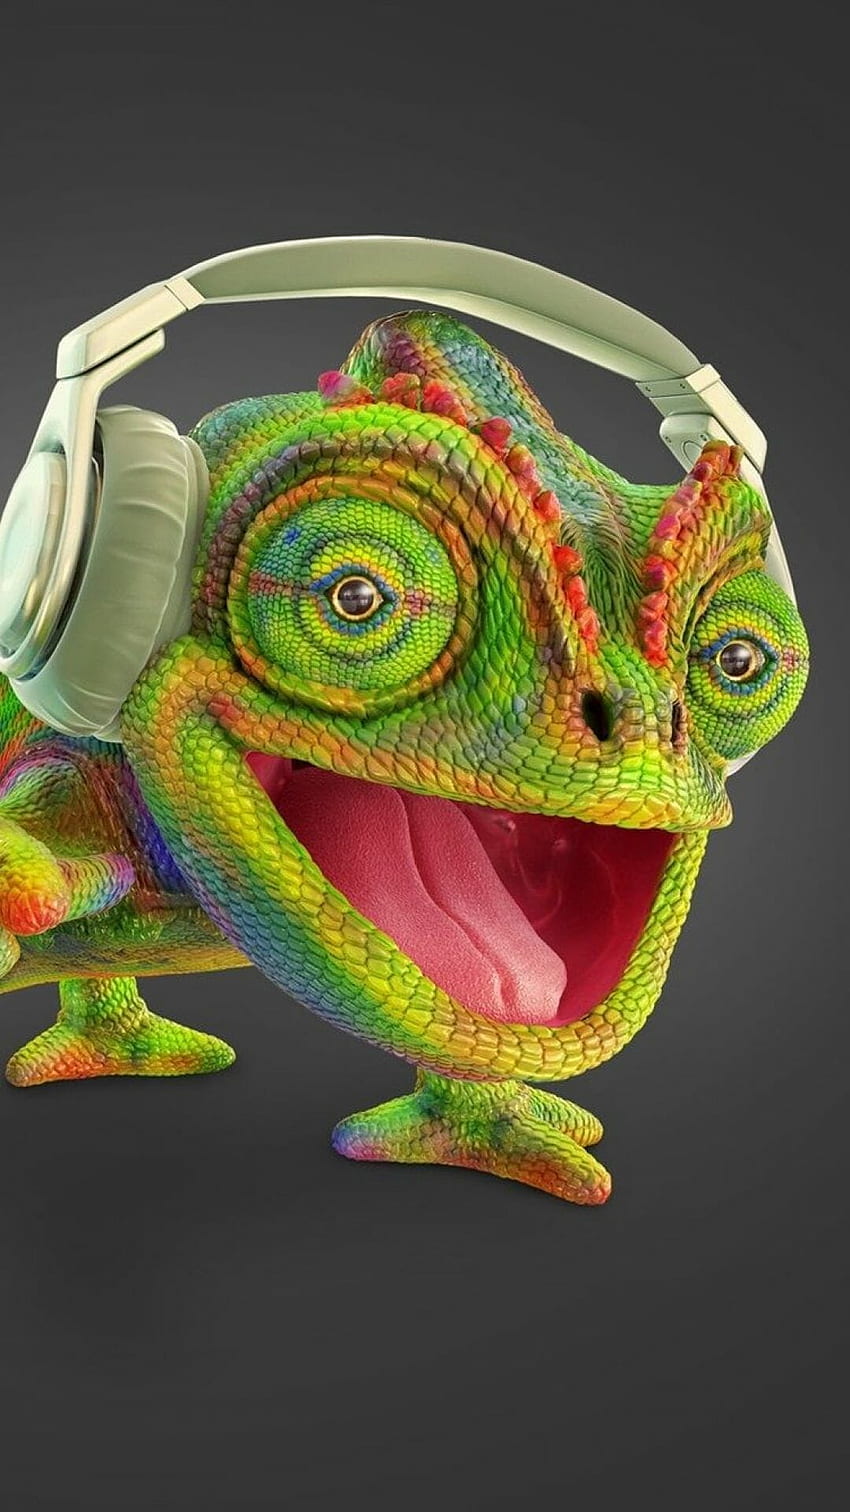 ۩80 Chameleon mendengarkan musik, headphone, kreatif - Latar Belakang Android / iPhone (png / jpg) (2022), Musik Kreatif wallpaper ponsel HD